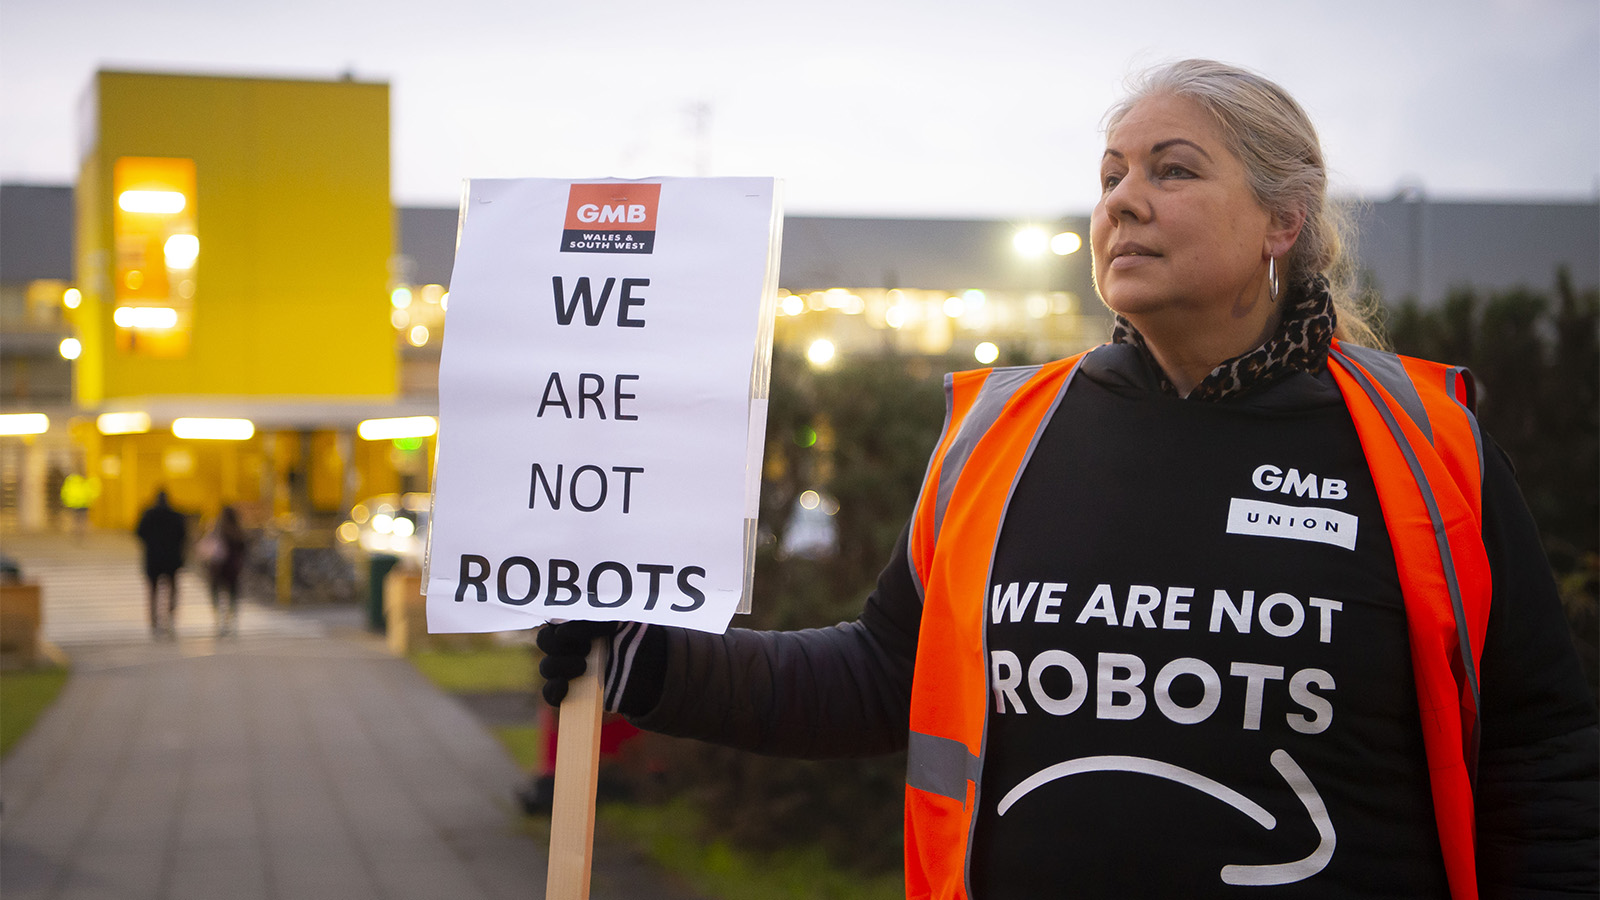 נציגת ועד עובדי אמזון מוחה על 'תנאים לא אנושיים' במרכז אמזון בווילס. &quot;אנחנו לא רובוטים&quot; (צילום: מתיו הורווד/Getty Images)